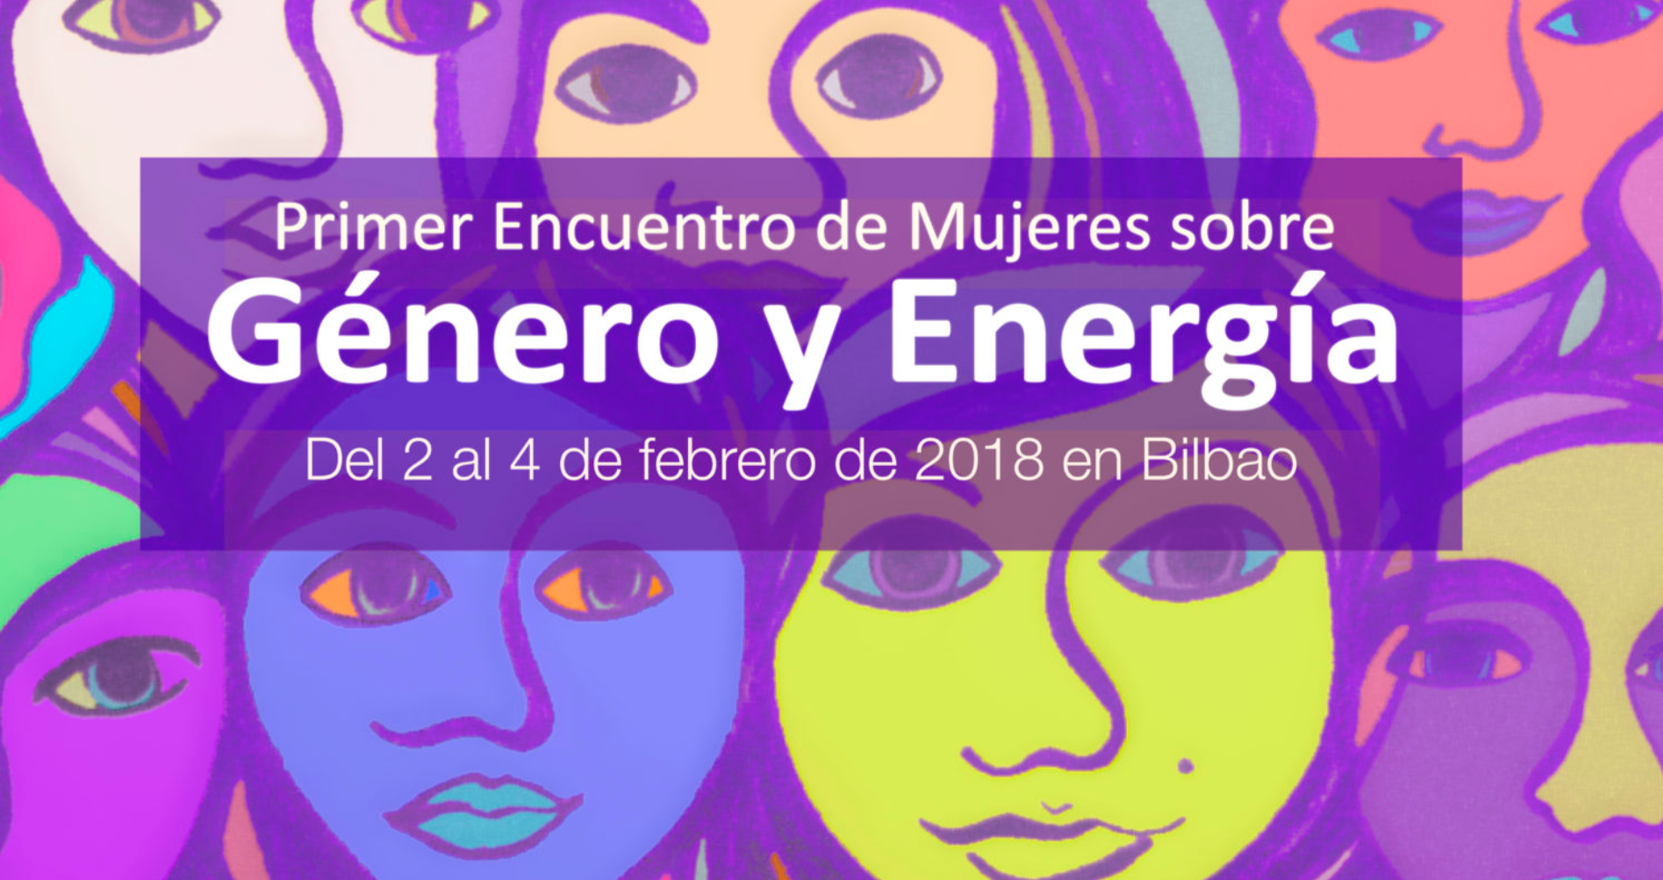 Primer encuentro de Mujeres sobre Género y Energía